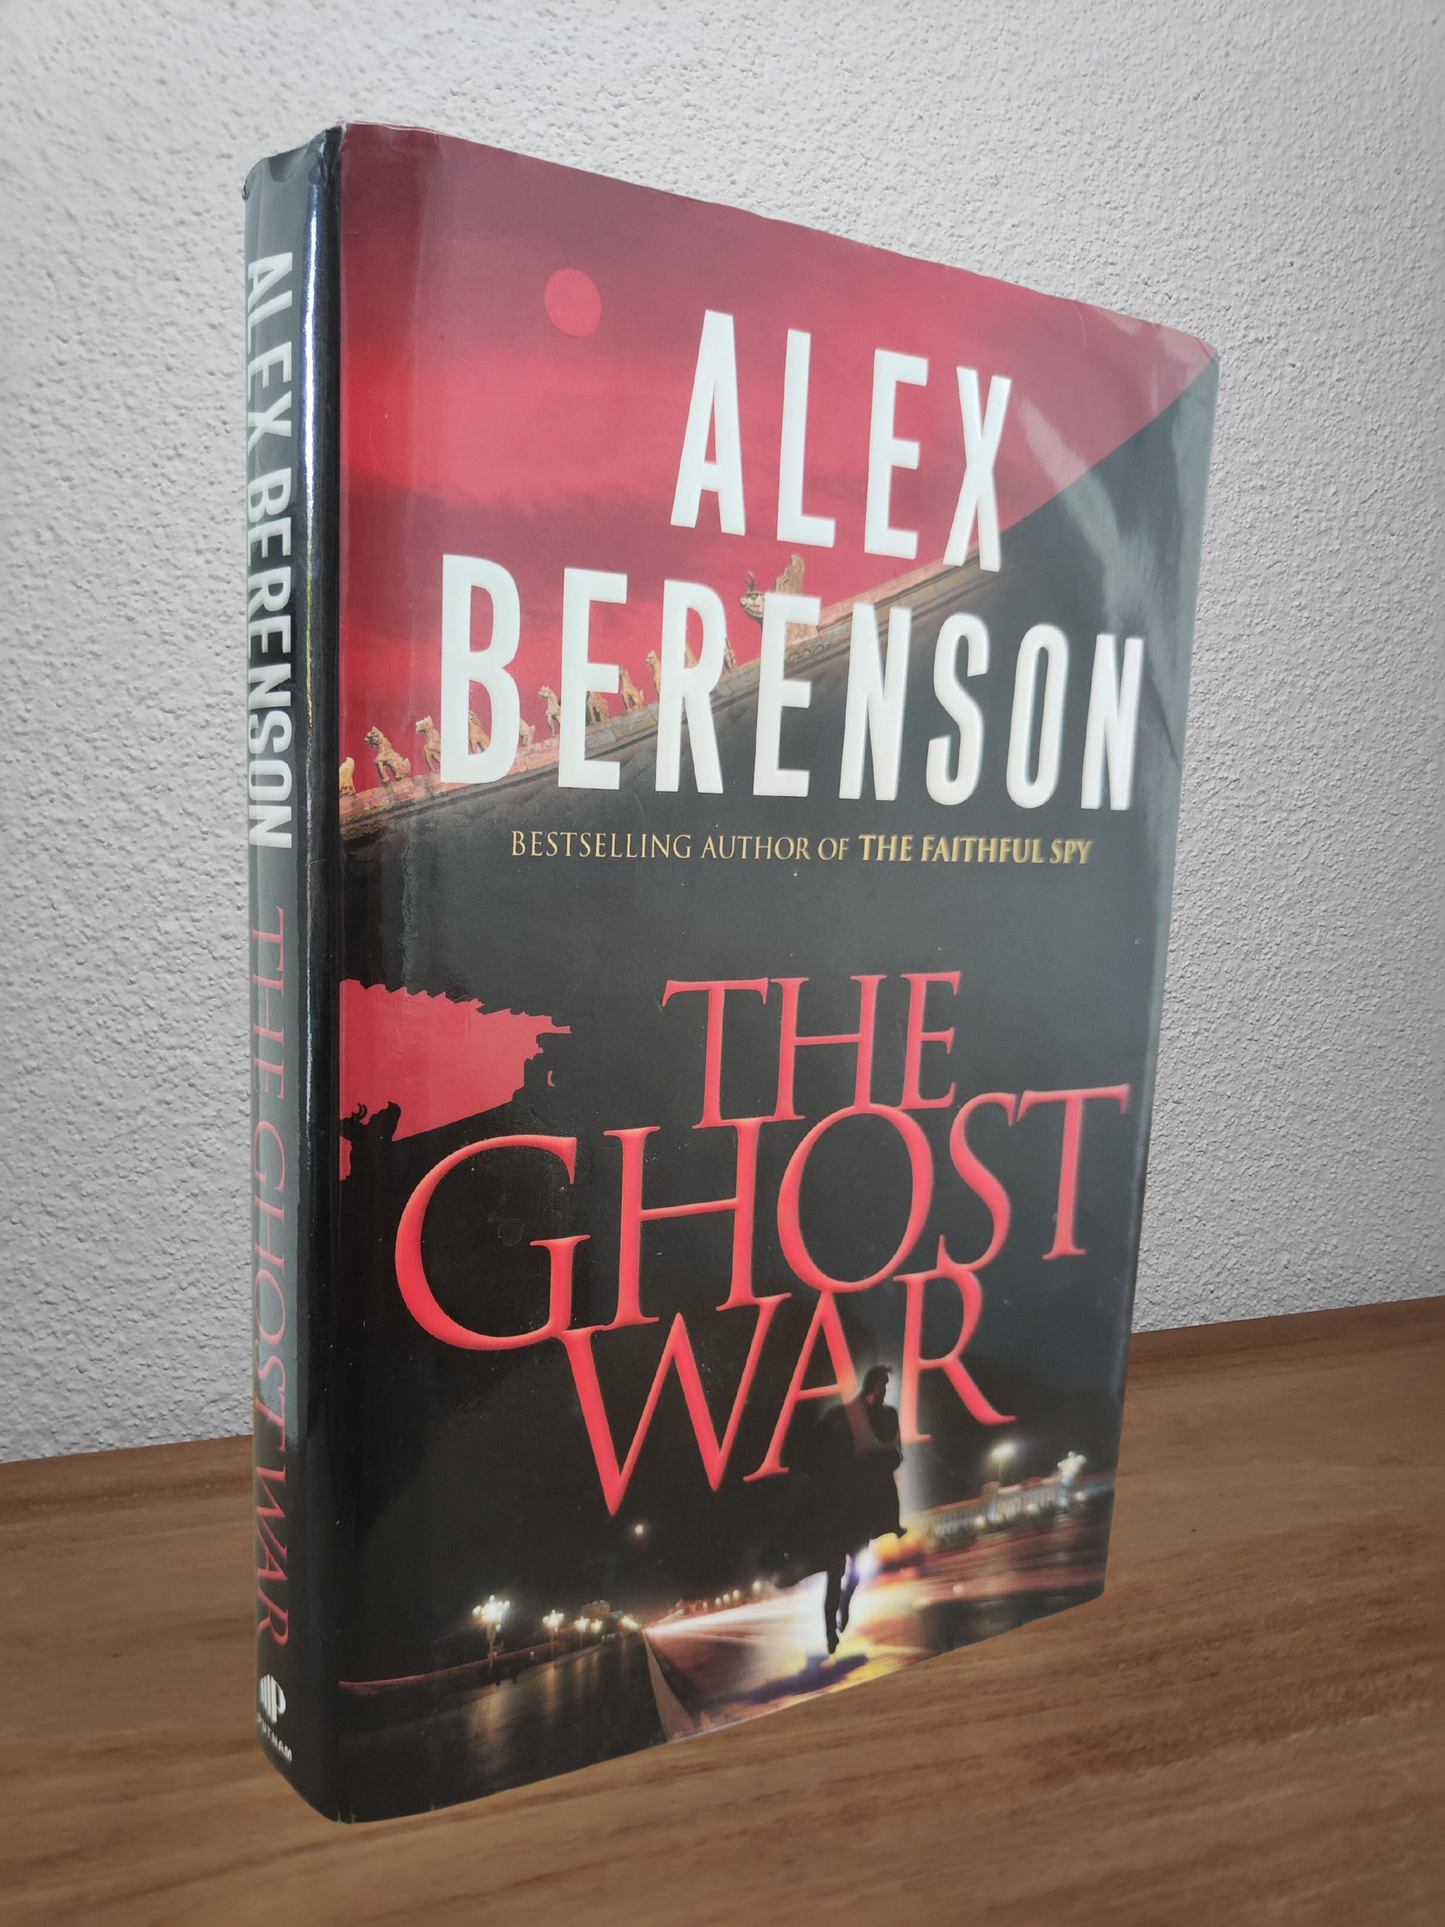 Alex Berenson - The Ghost War (John Wells #2)